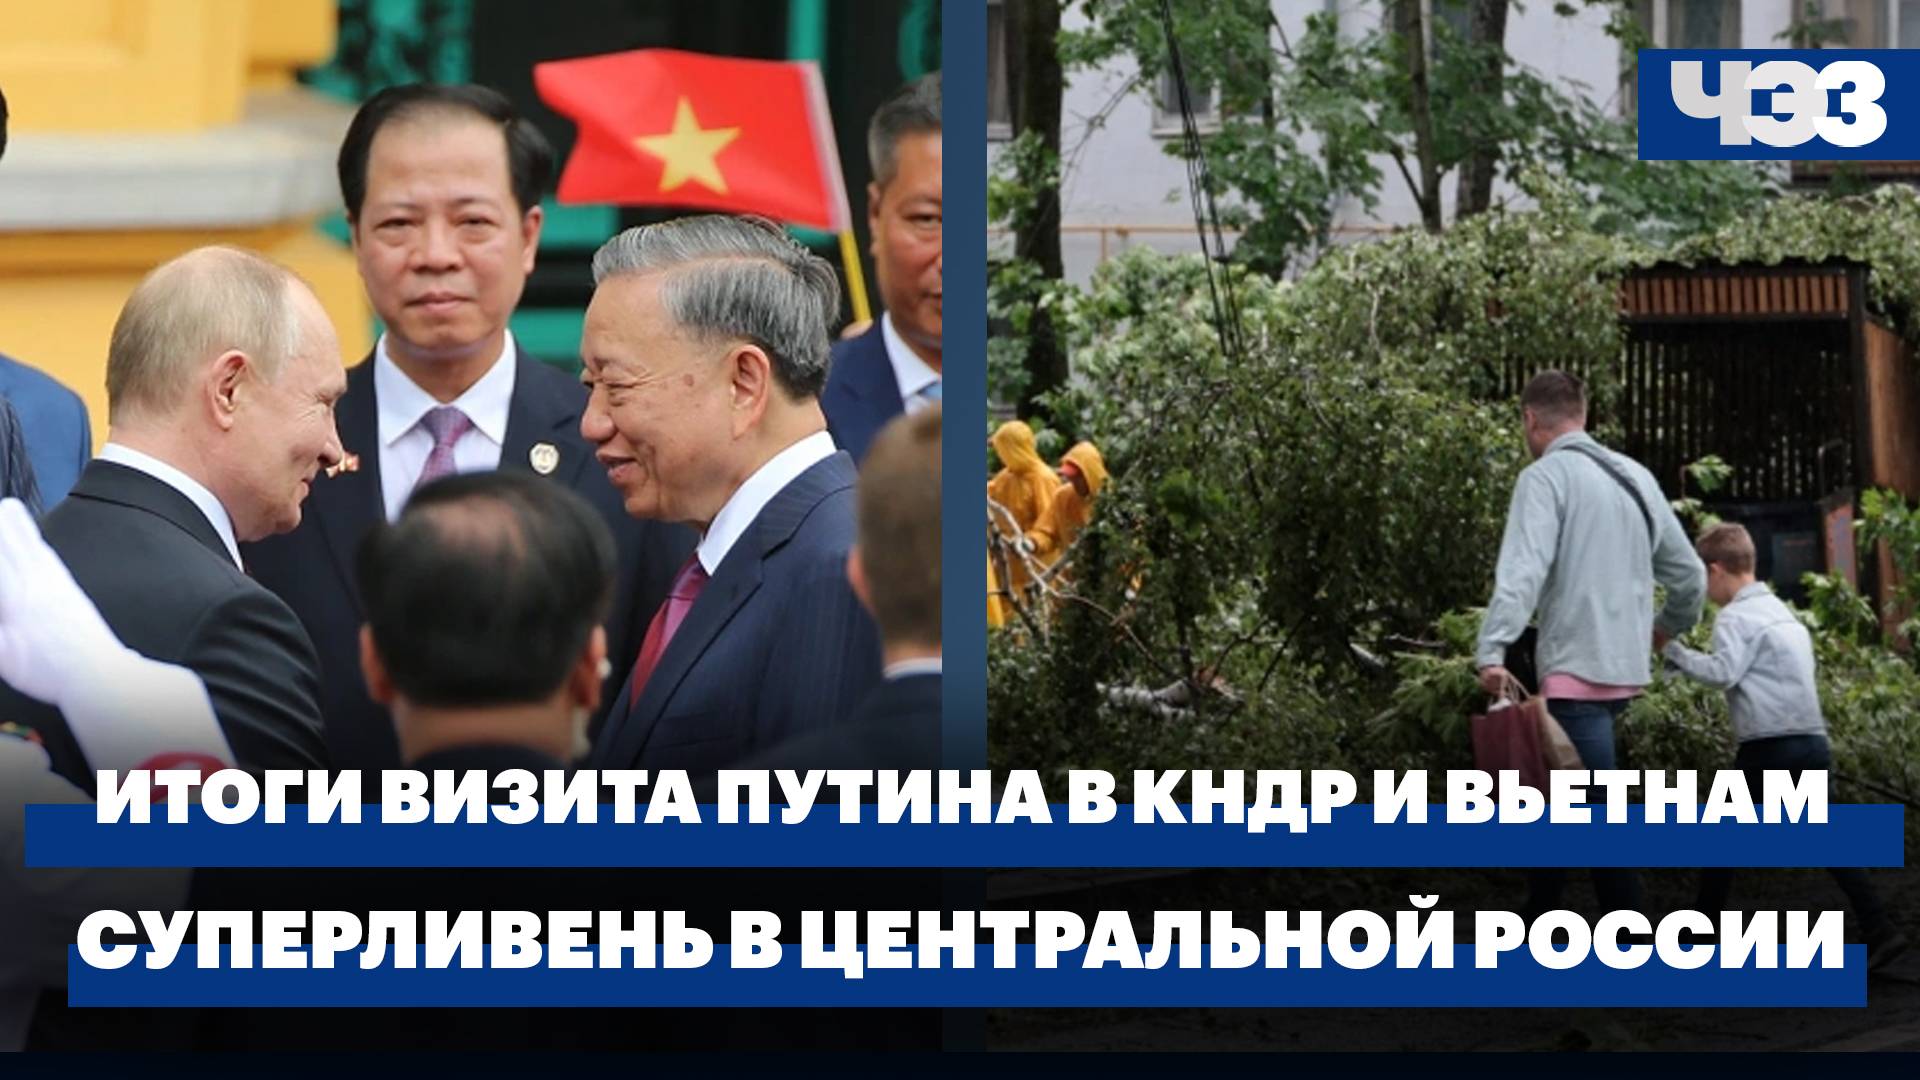 Итоги визита Путина в КНДР и Вьетнам. Последствия урагана и суперливня в Центральной России